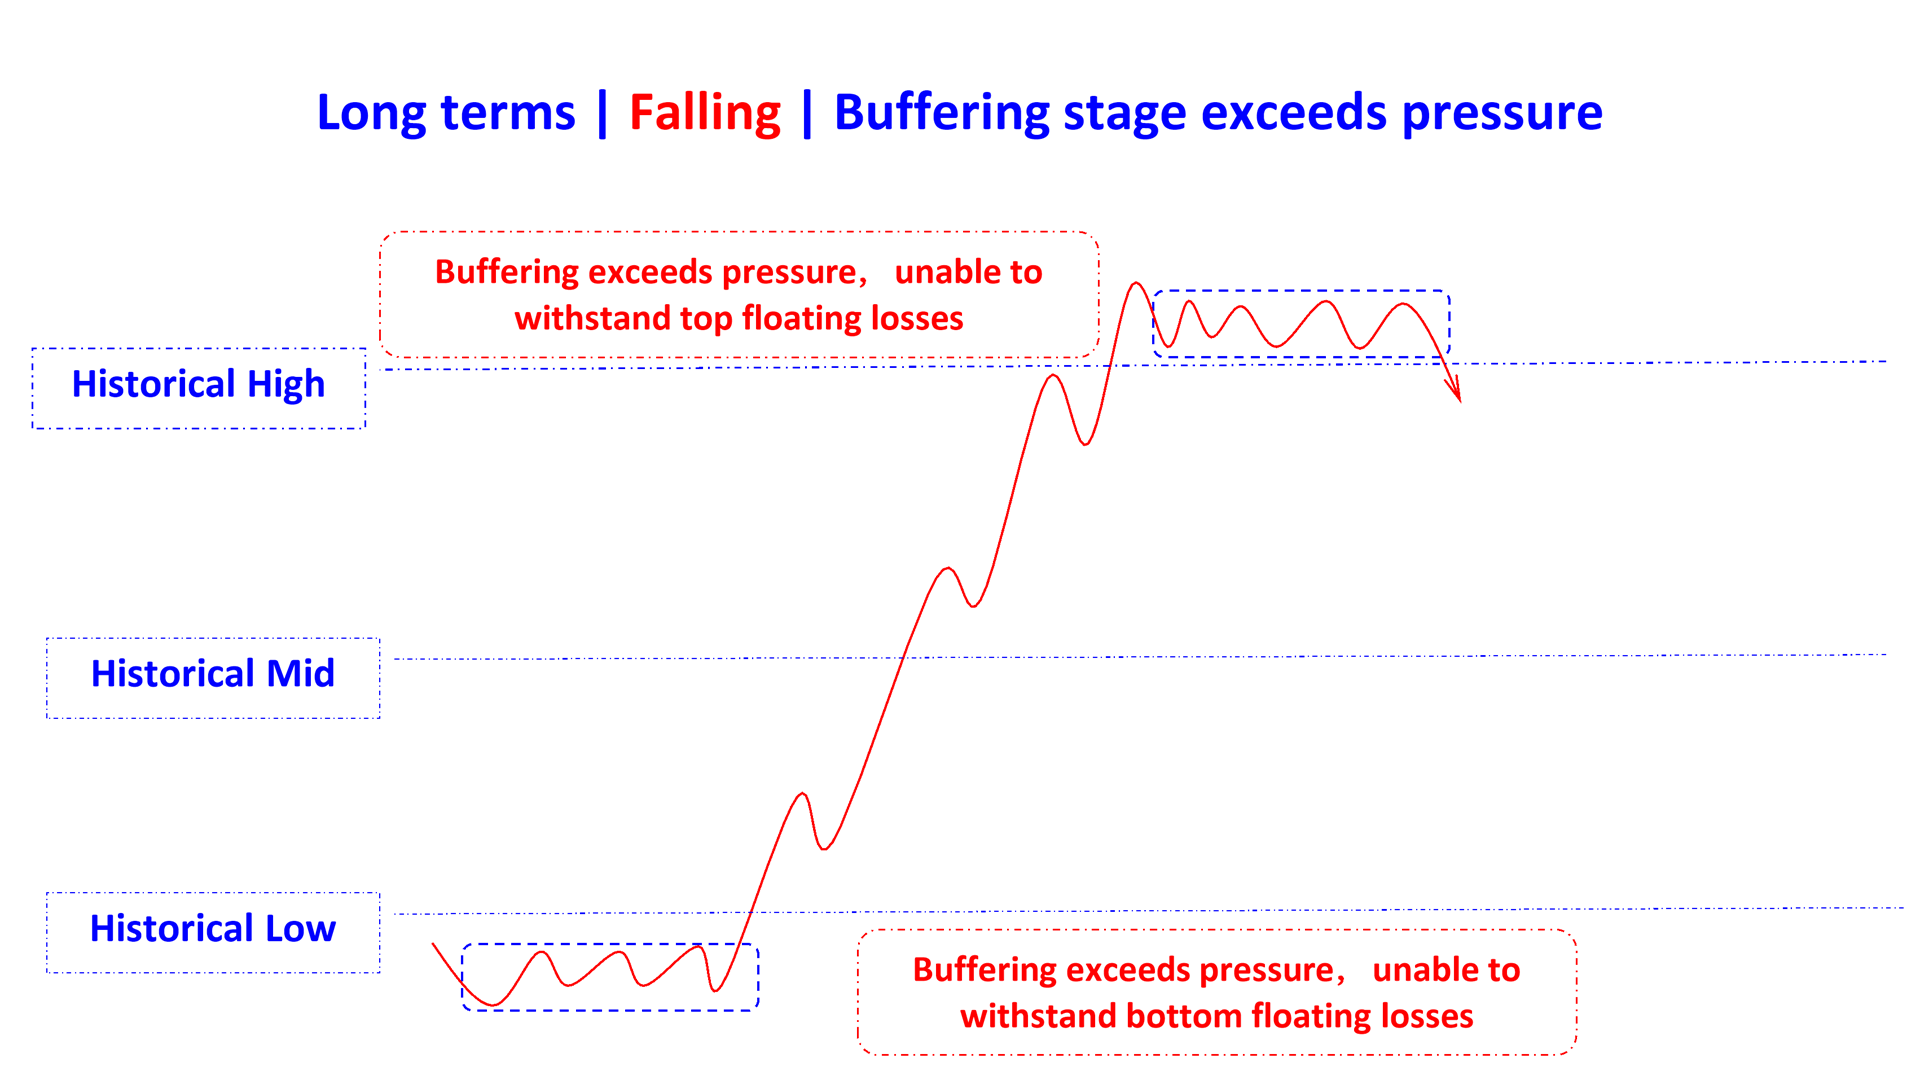 buffering stage exceeds pressure in rising en